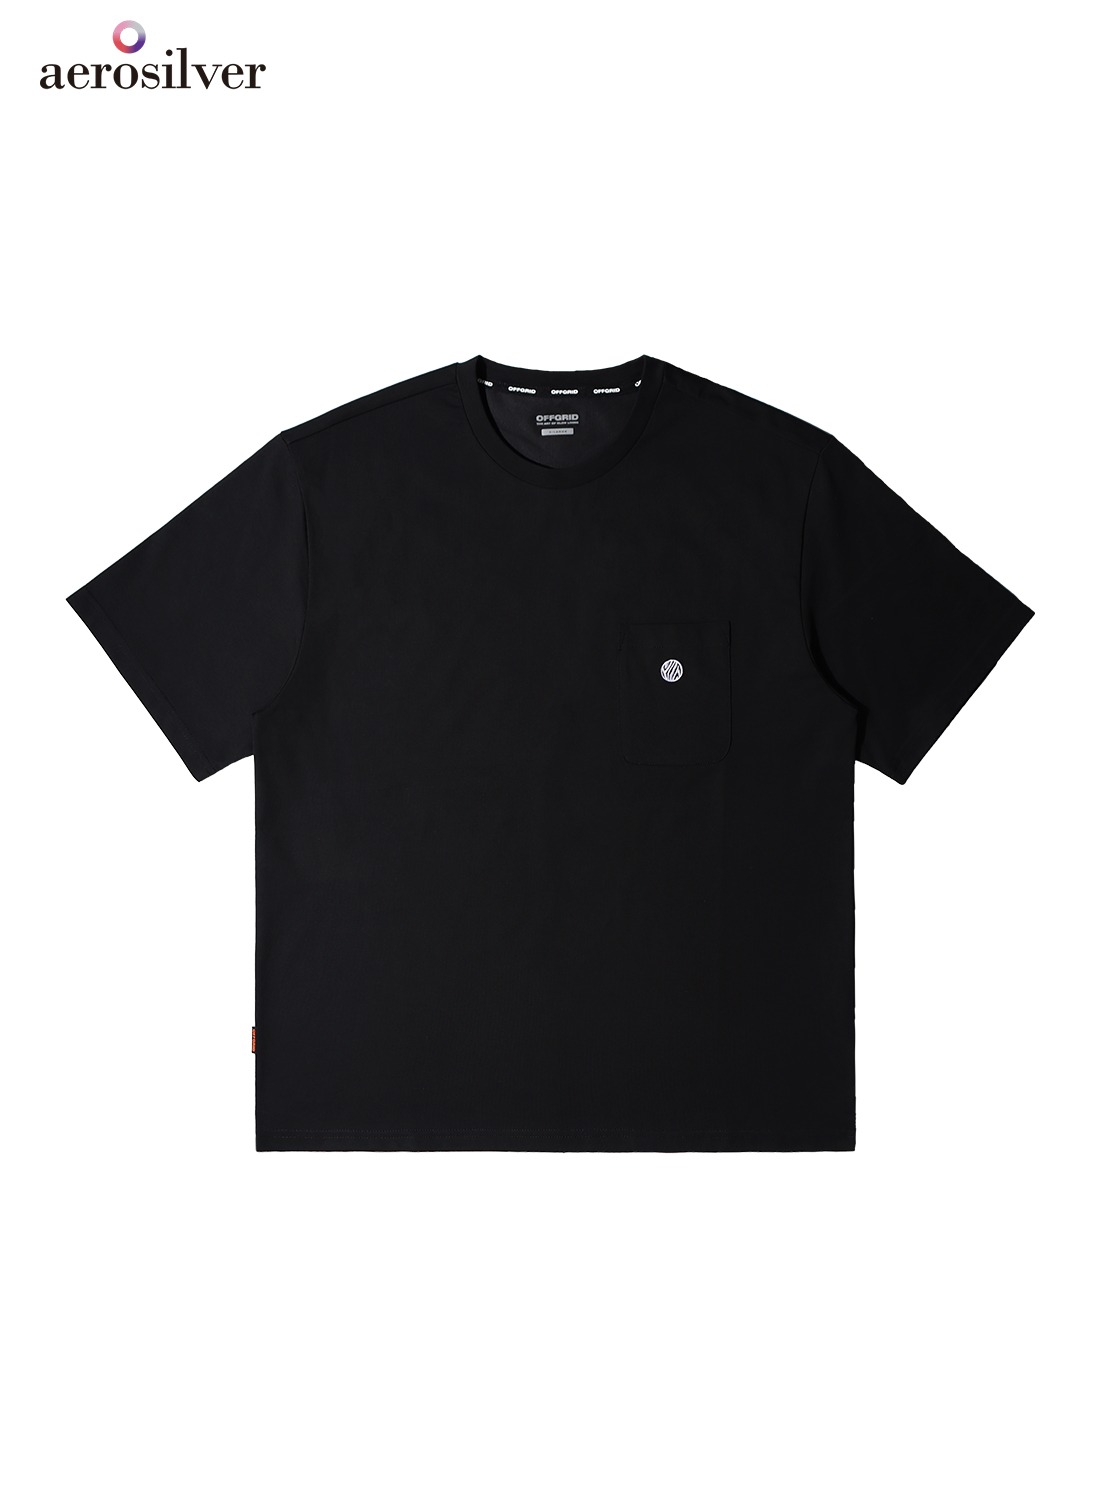 OG 베이직 포켓 로고 티셔츠-블랙